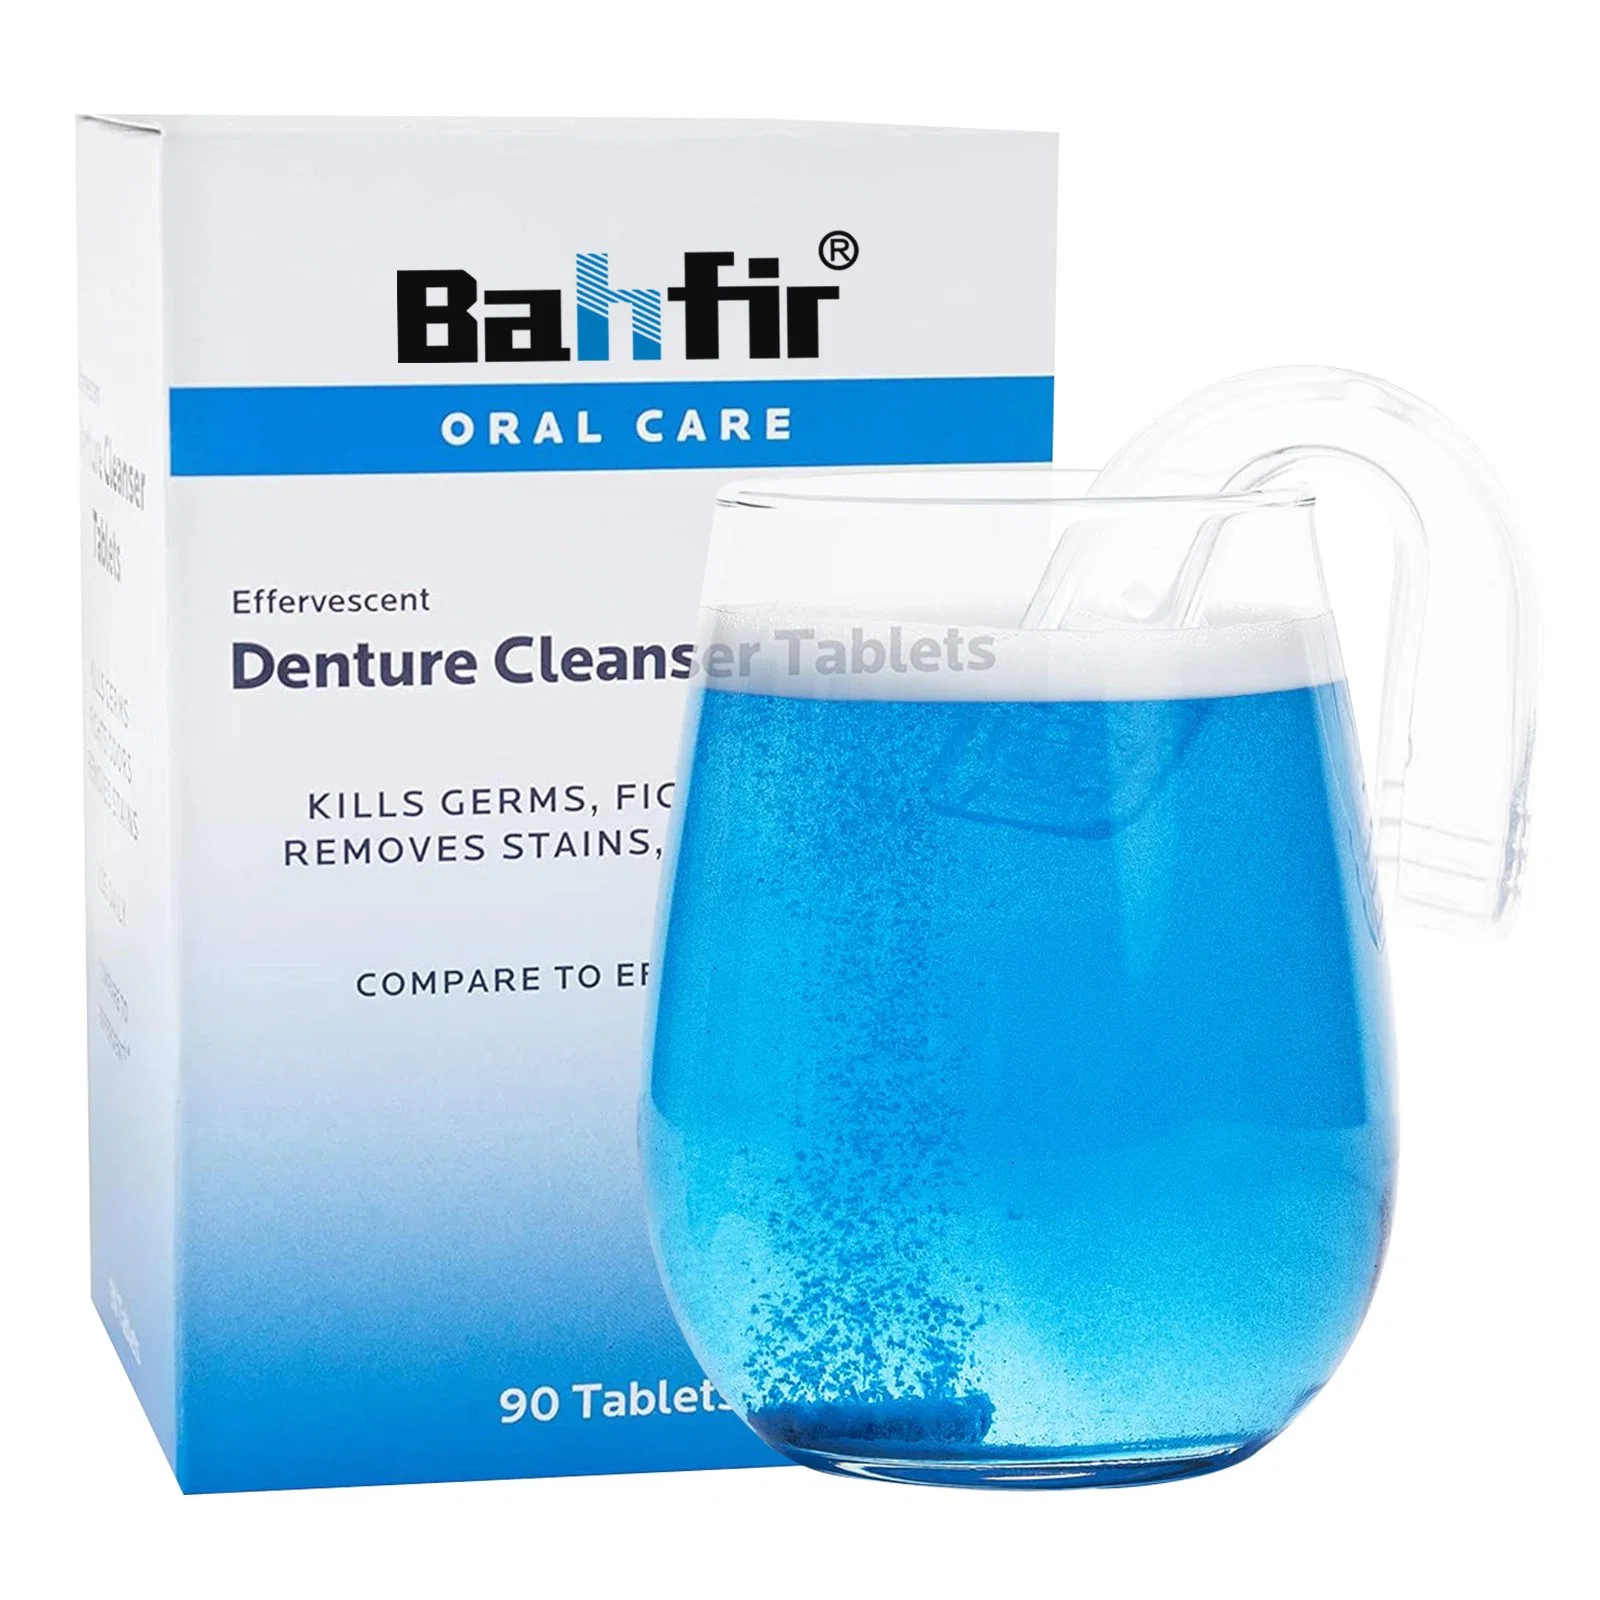 Haltering Reinigungstabletten, ein Produkt zum Reinigen, Aufhellen und Desinfizieren Ihrer Zahnarztgeräte über Nacht